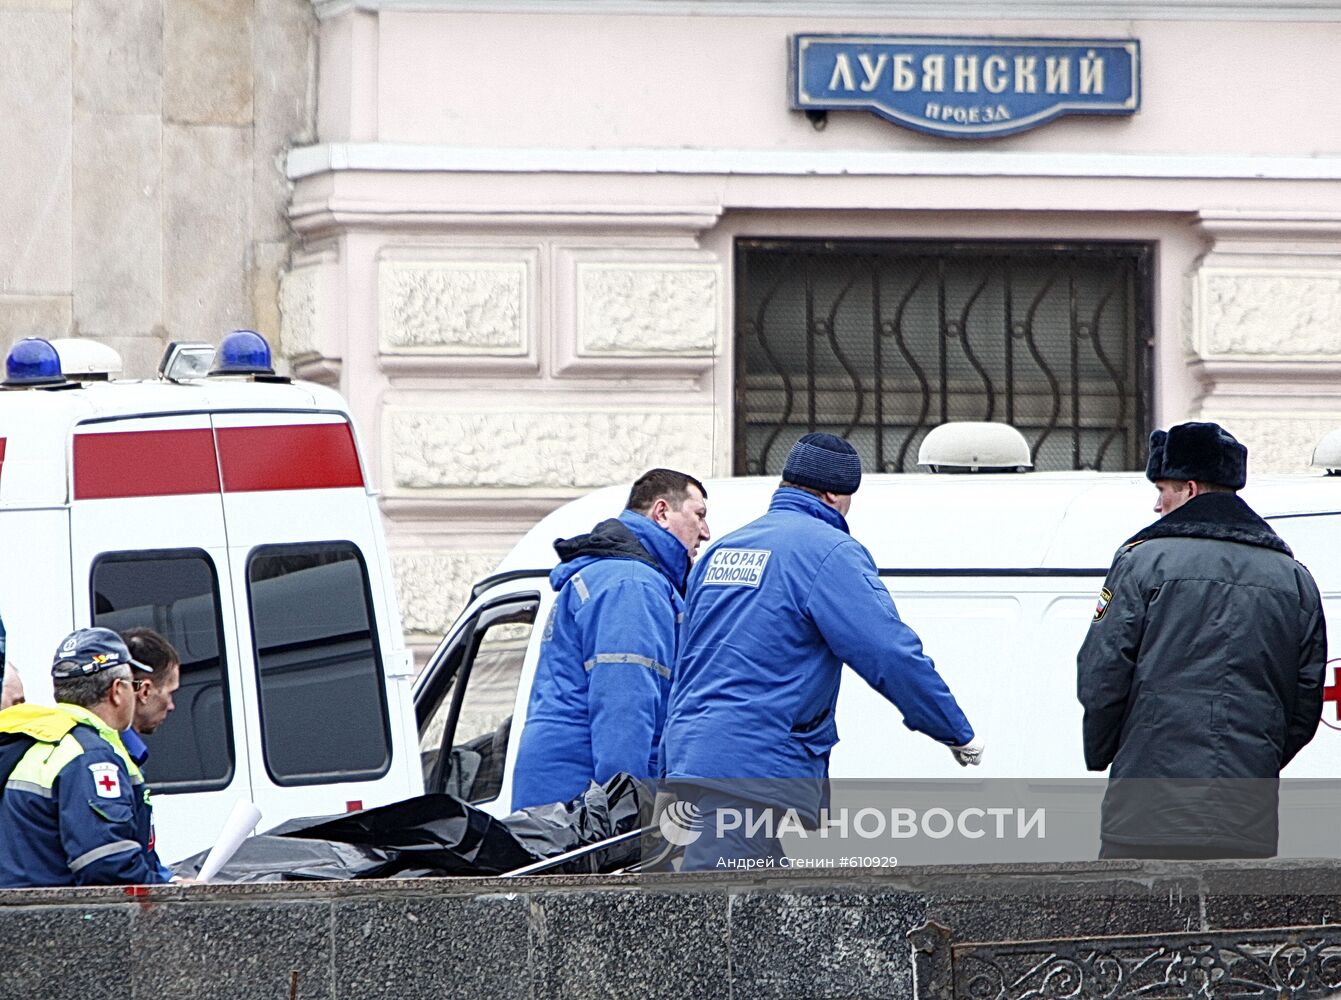 Взрыв на станции метро "Лубянка"